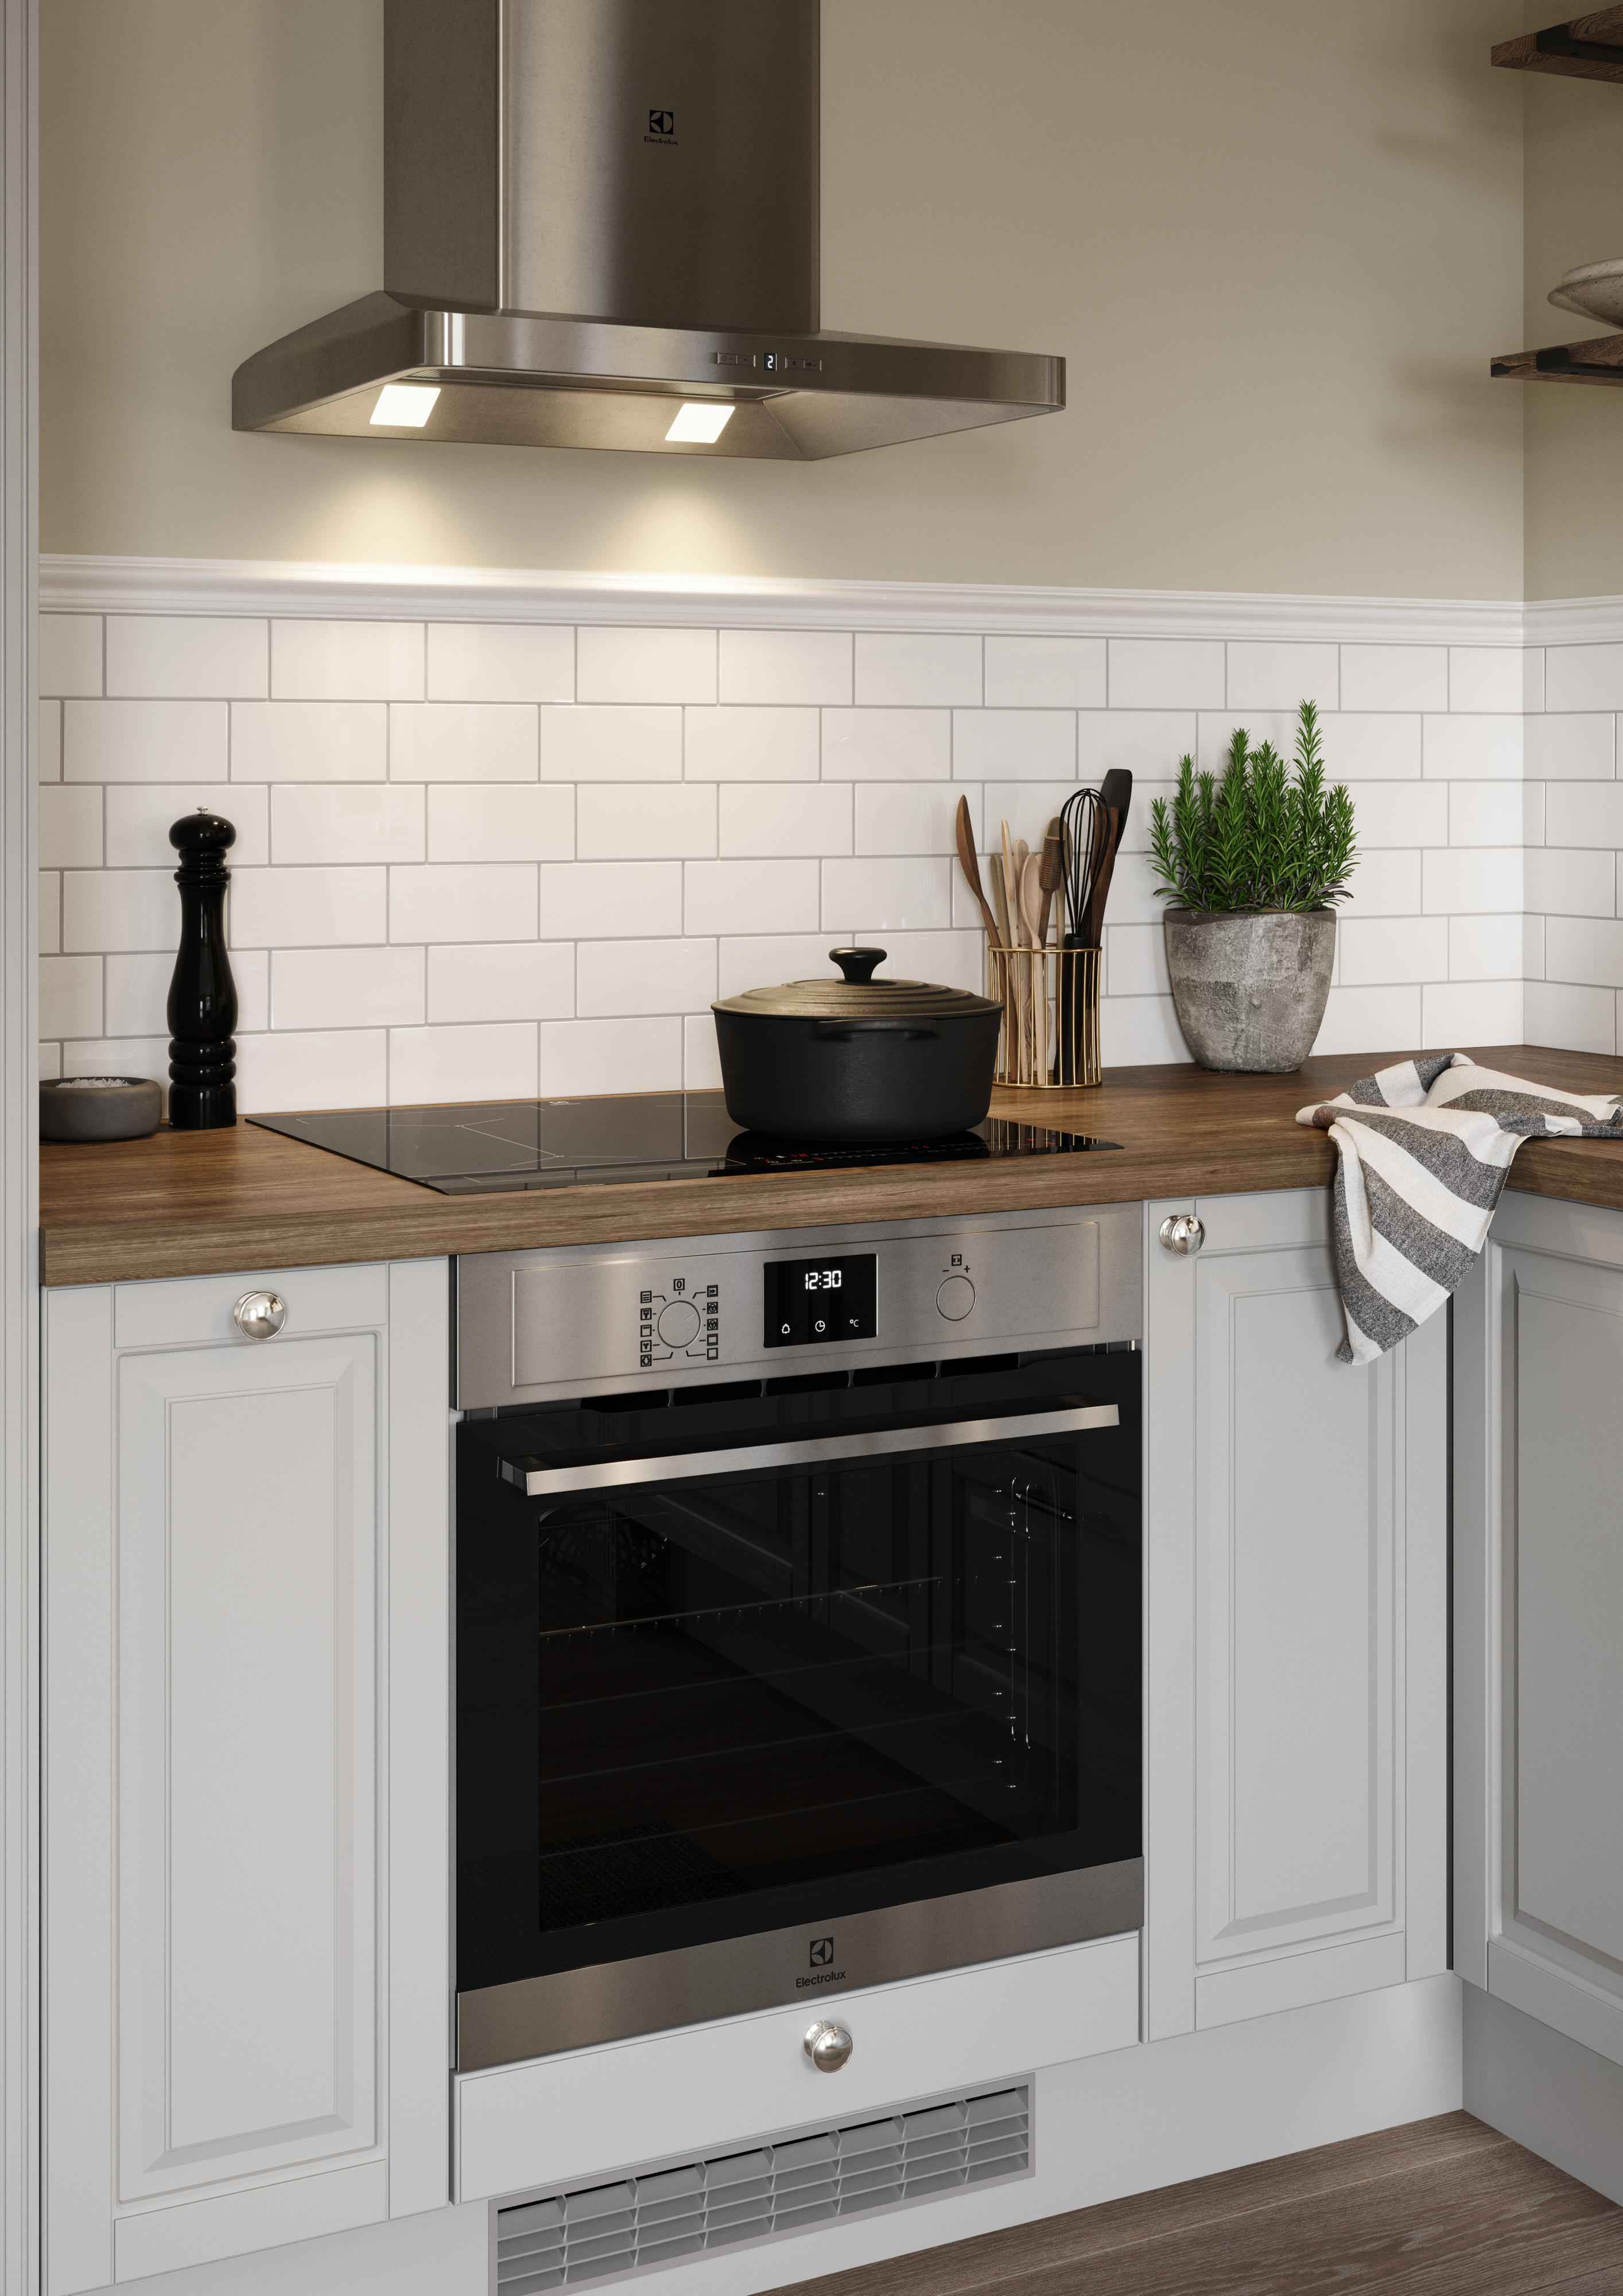 EPOQ Heritage Light Grey -keittiö Electroluxin integroidulla uunilla, liesituulettimella sekä keittiön tuulettimella